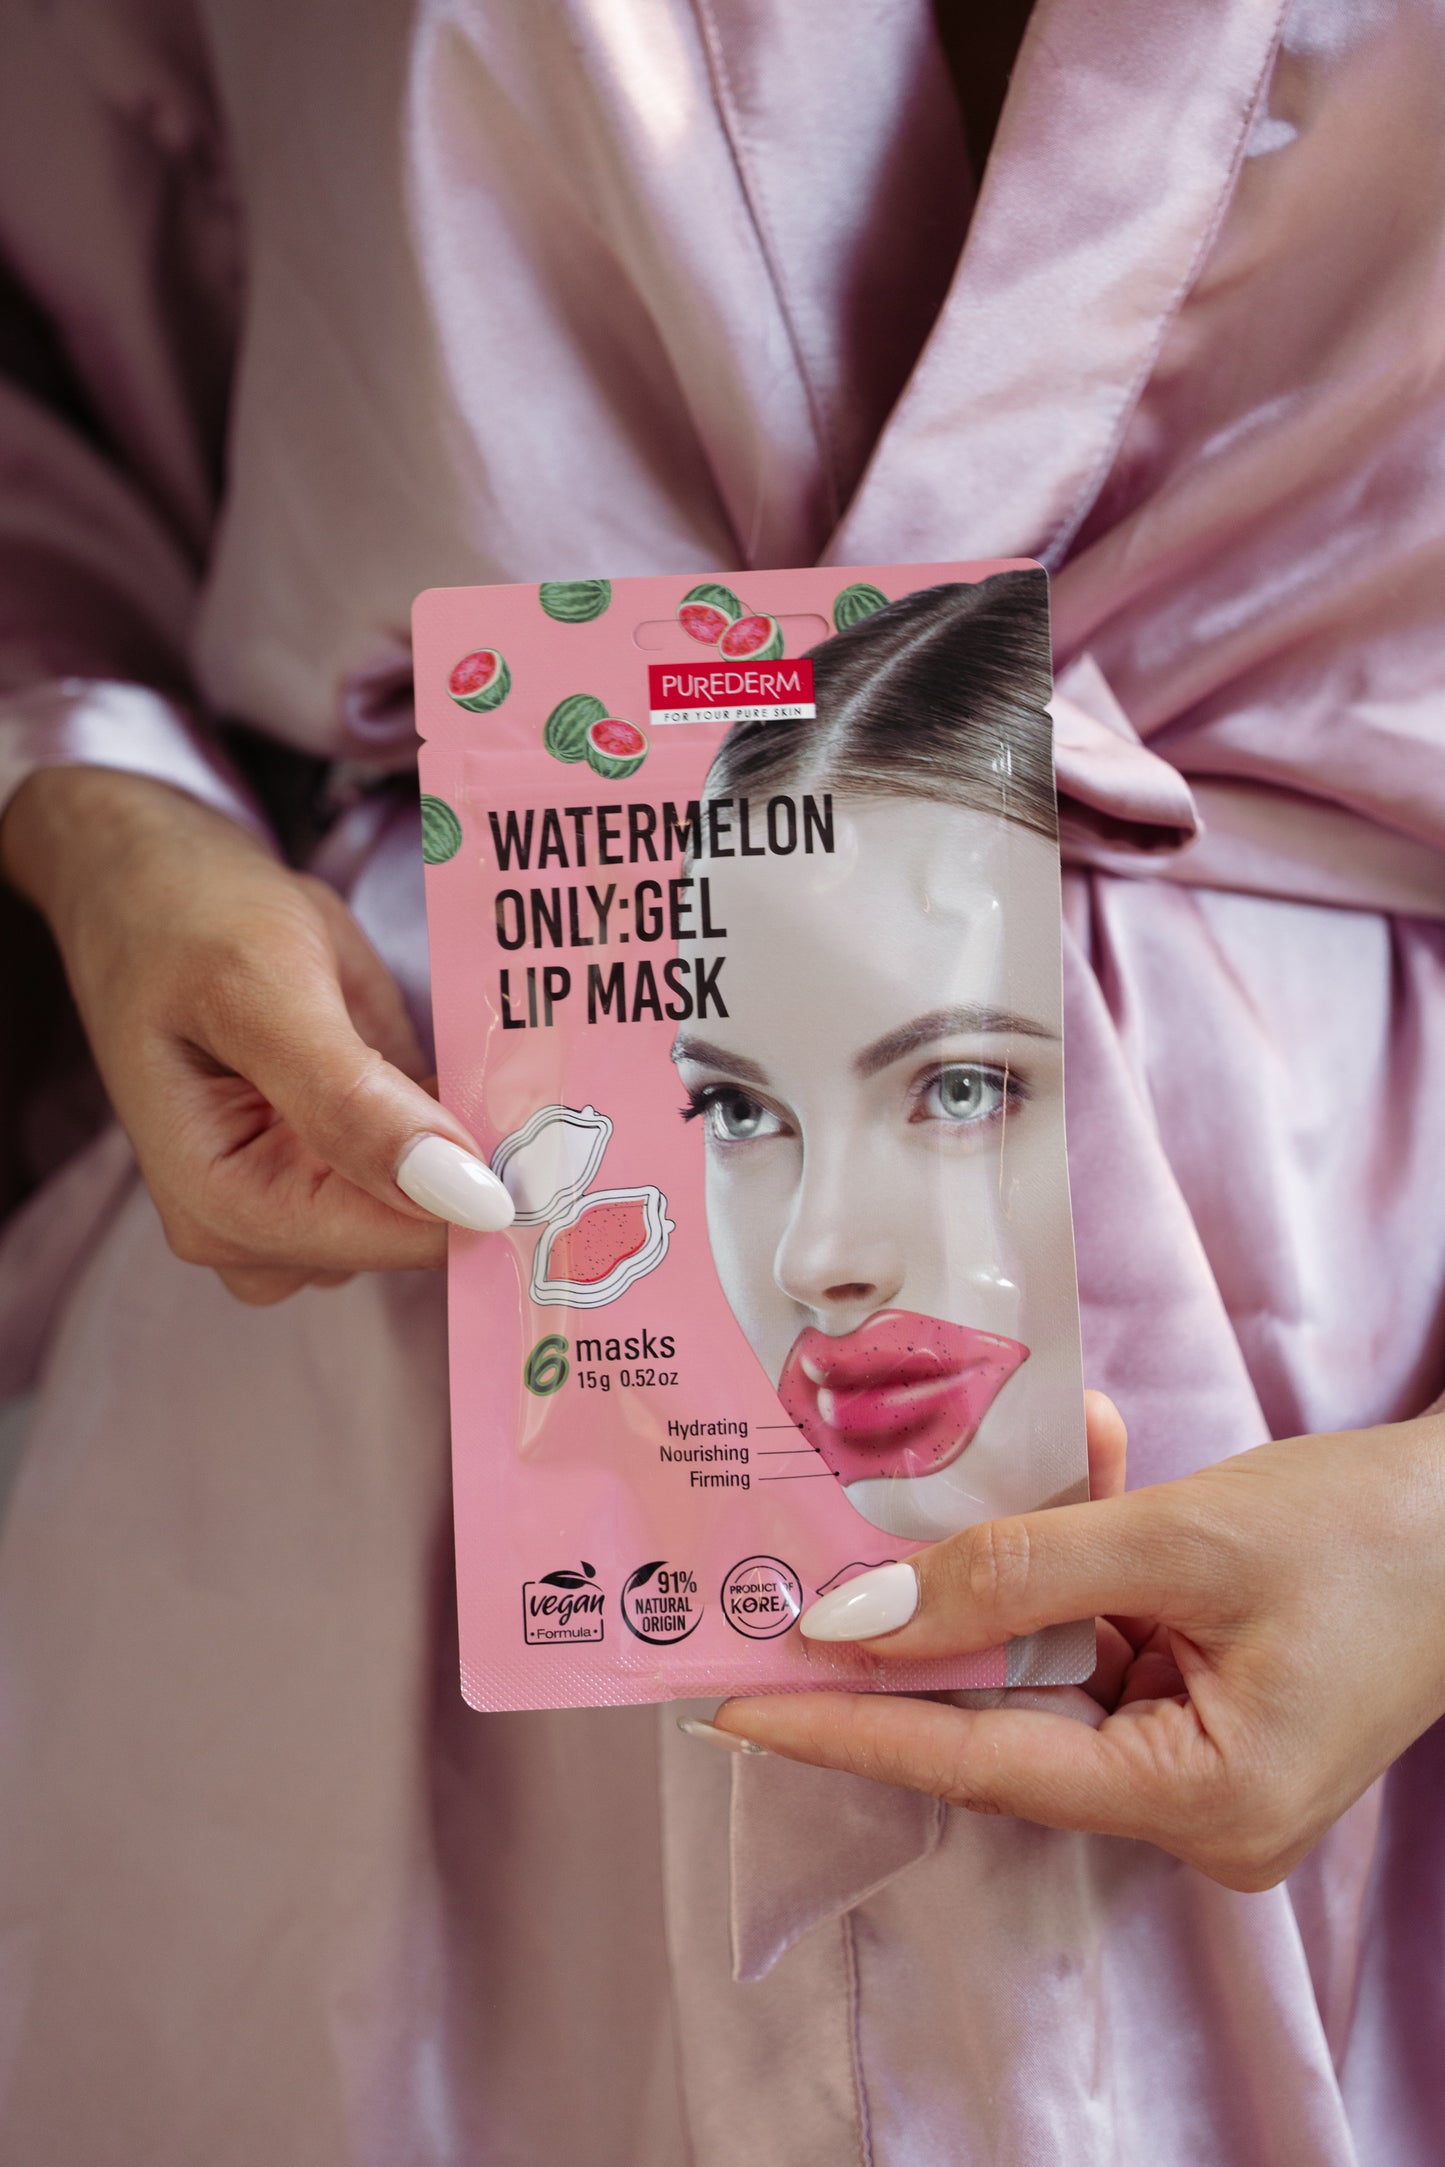 Watermelon only:gel lip mask